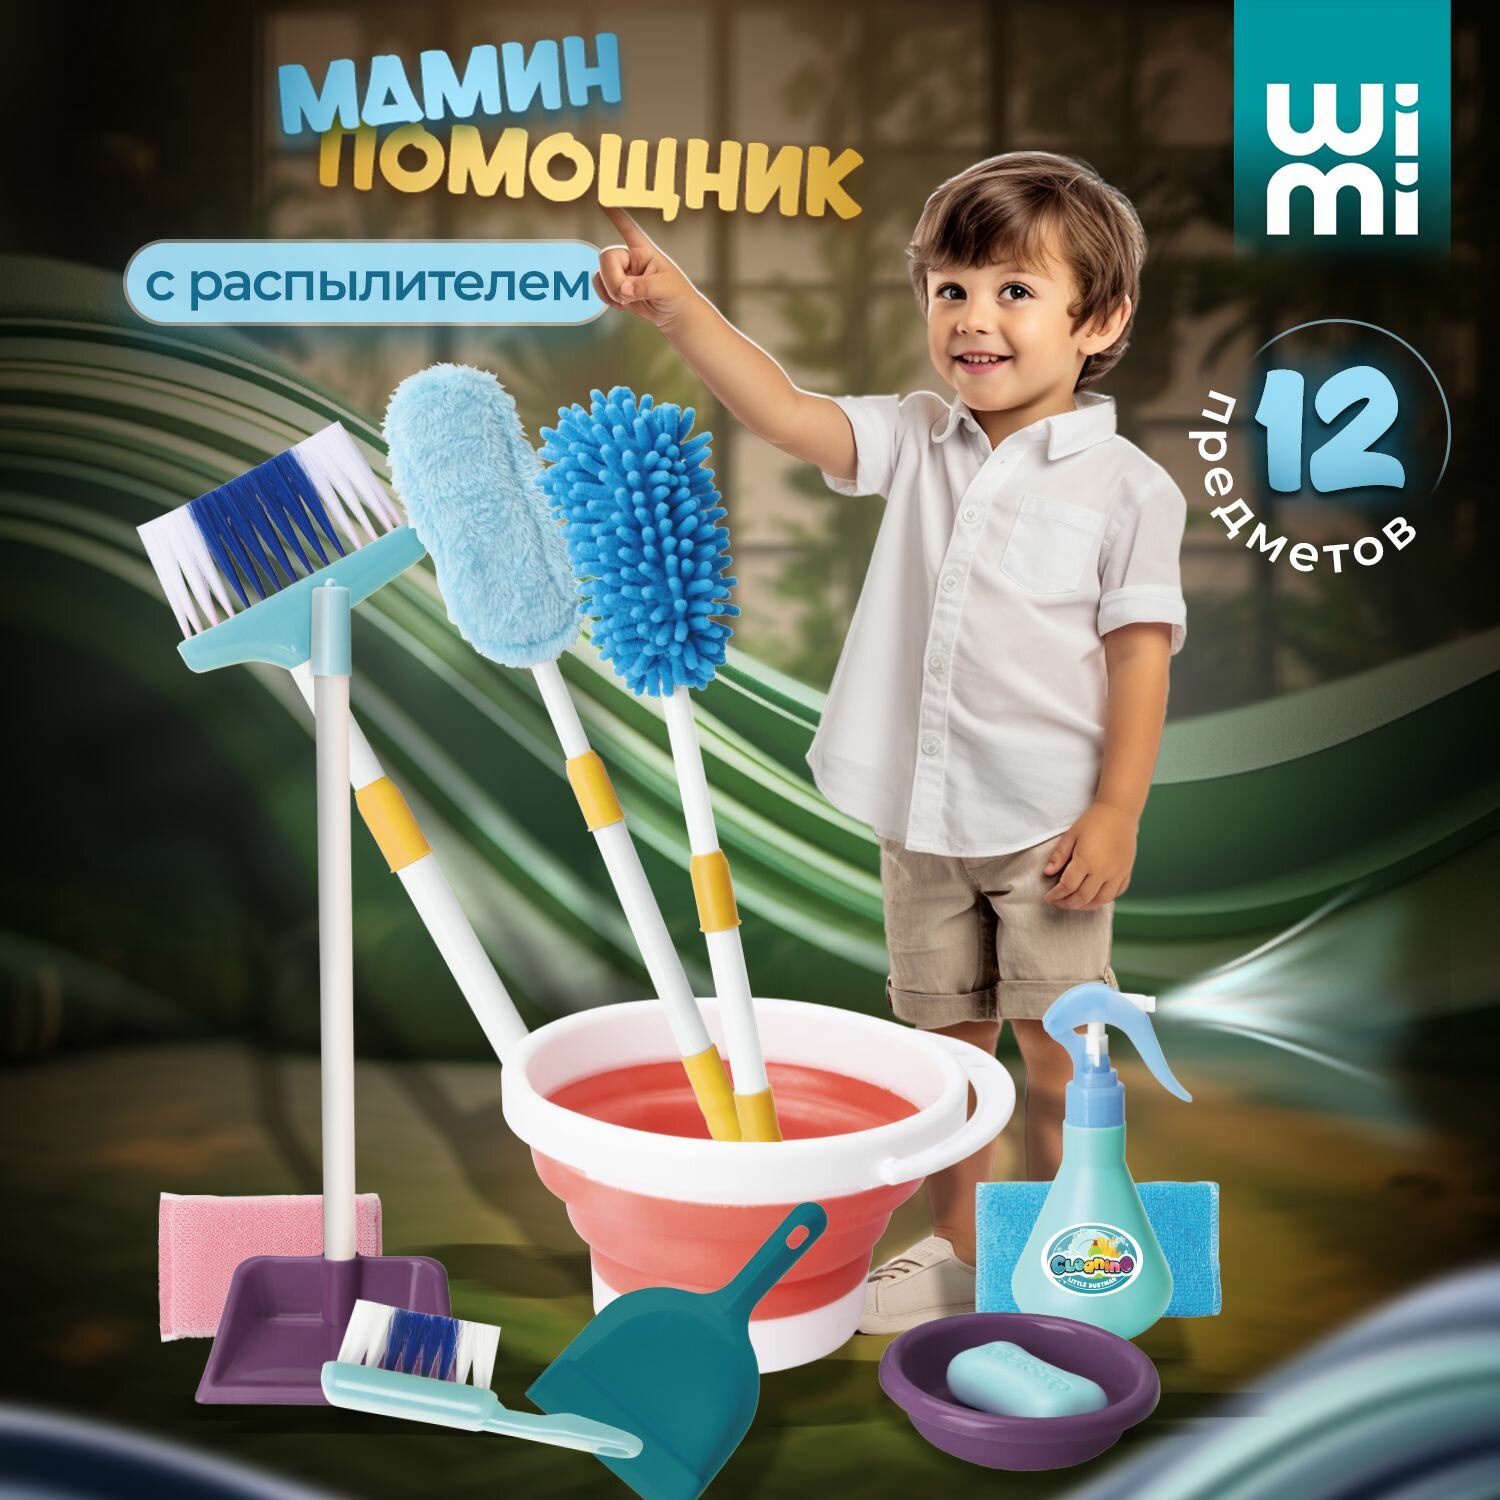 Набор для уборки детский WiMi из 12 предметов, швабра игрушечная и пластиковый совок в комплекте